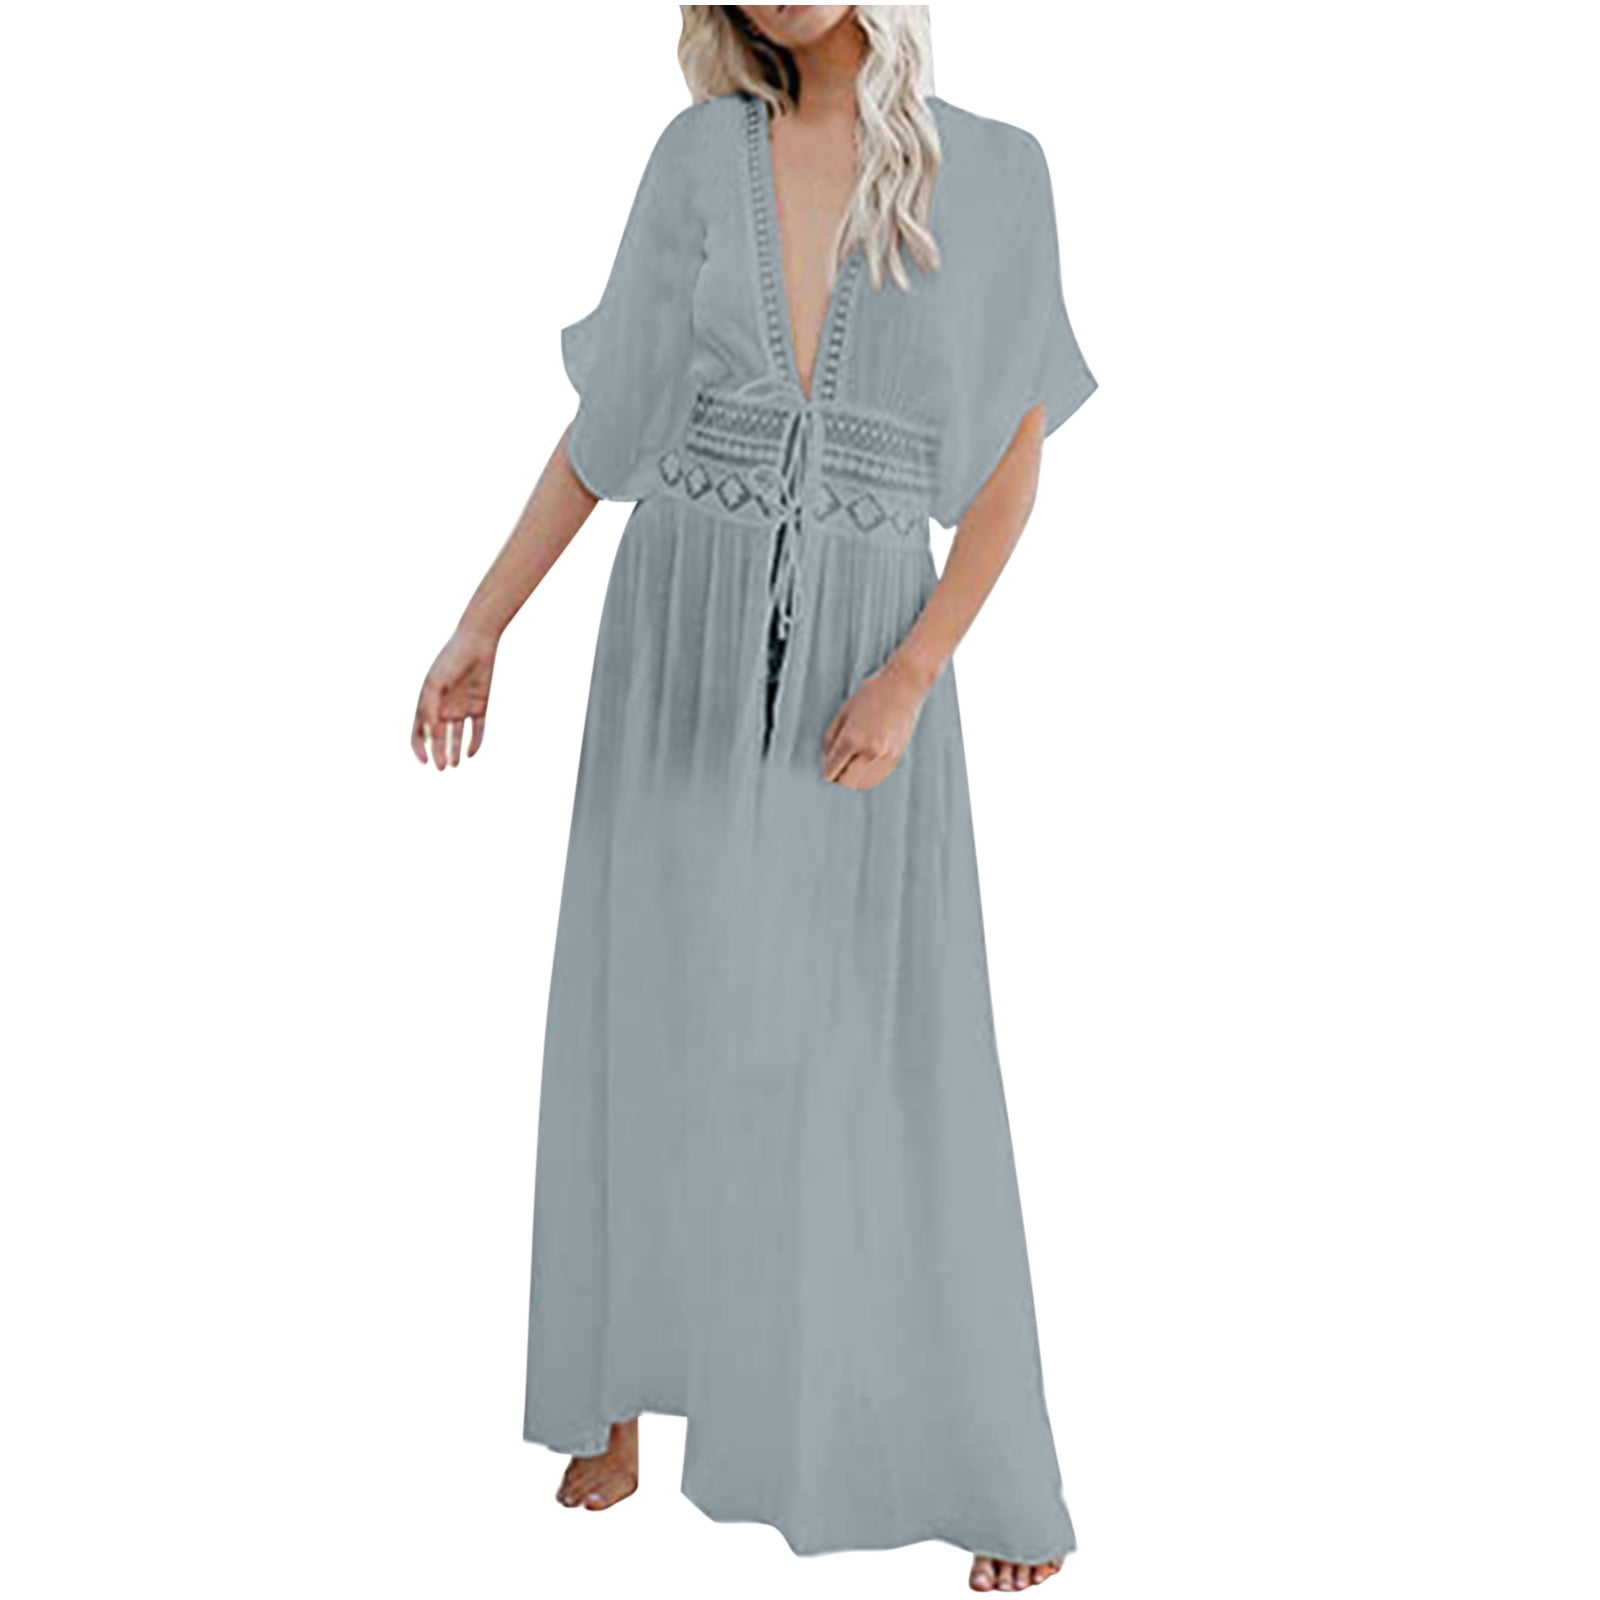 Wycnly Formal Dresses for Women Short Sleeve V-Neck Solid Summer